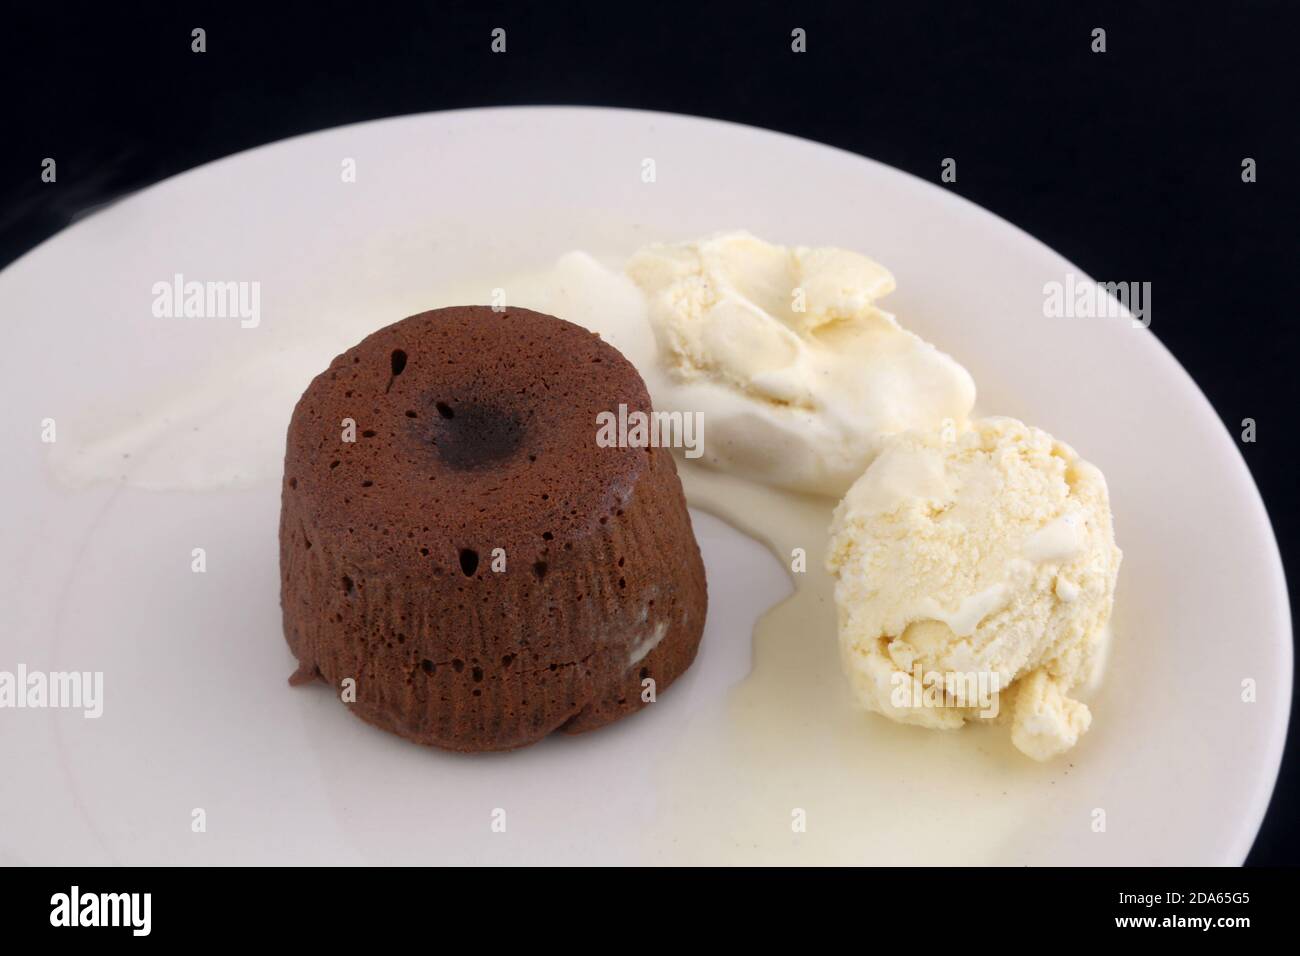 coulant al cioccolato con gelato al vanila Foto Stock